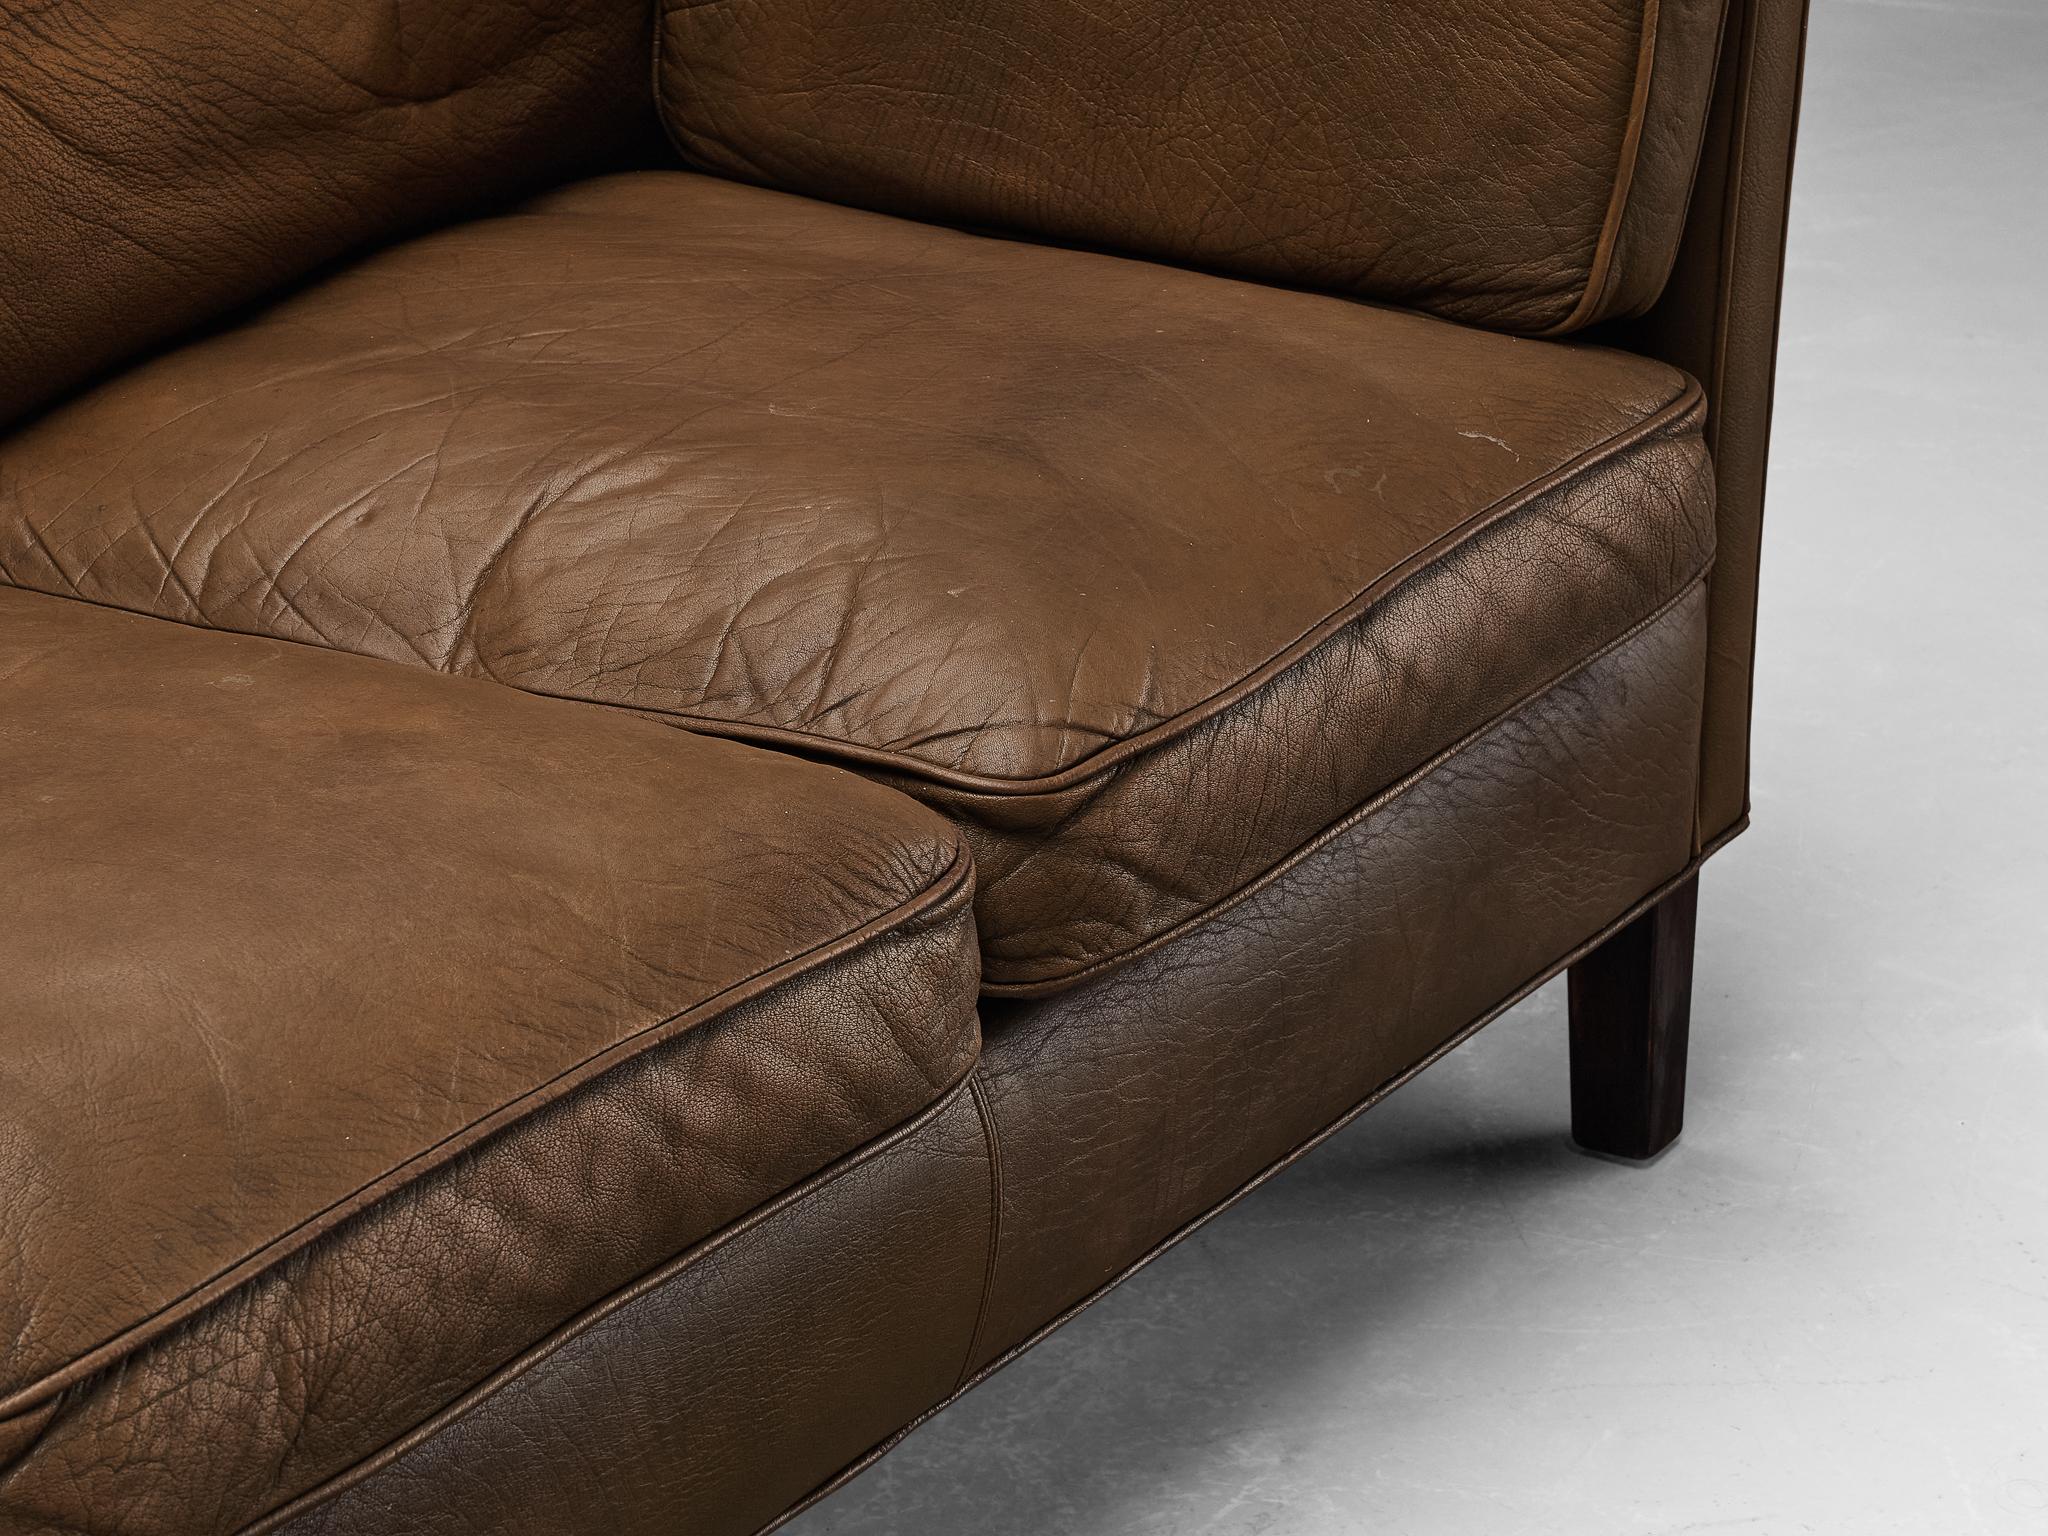 Danish Sofa in Brown Leather